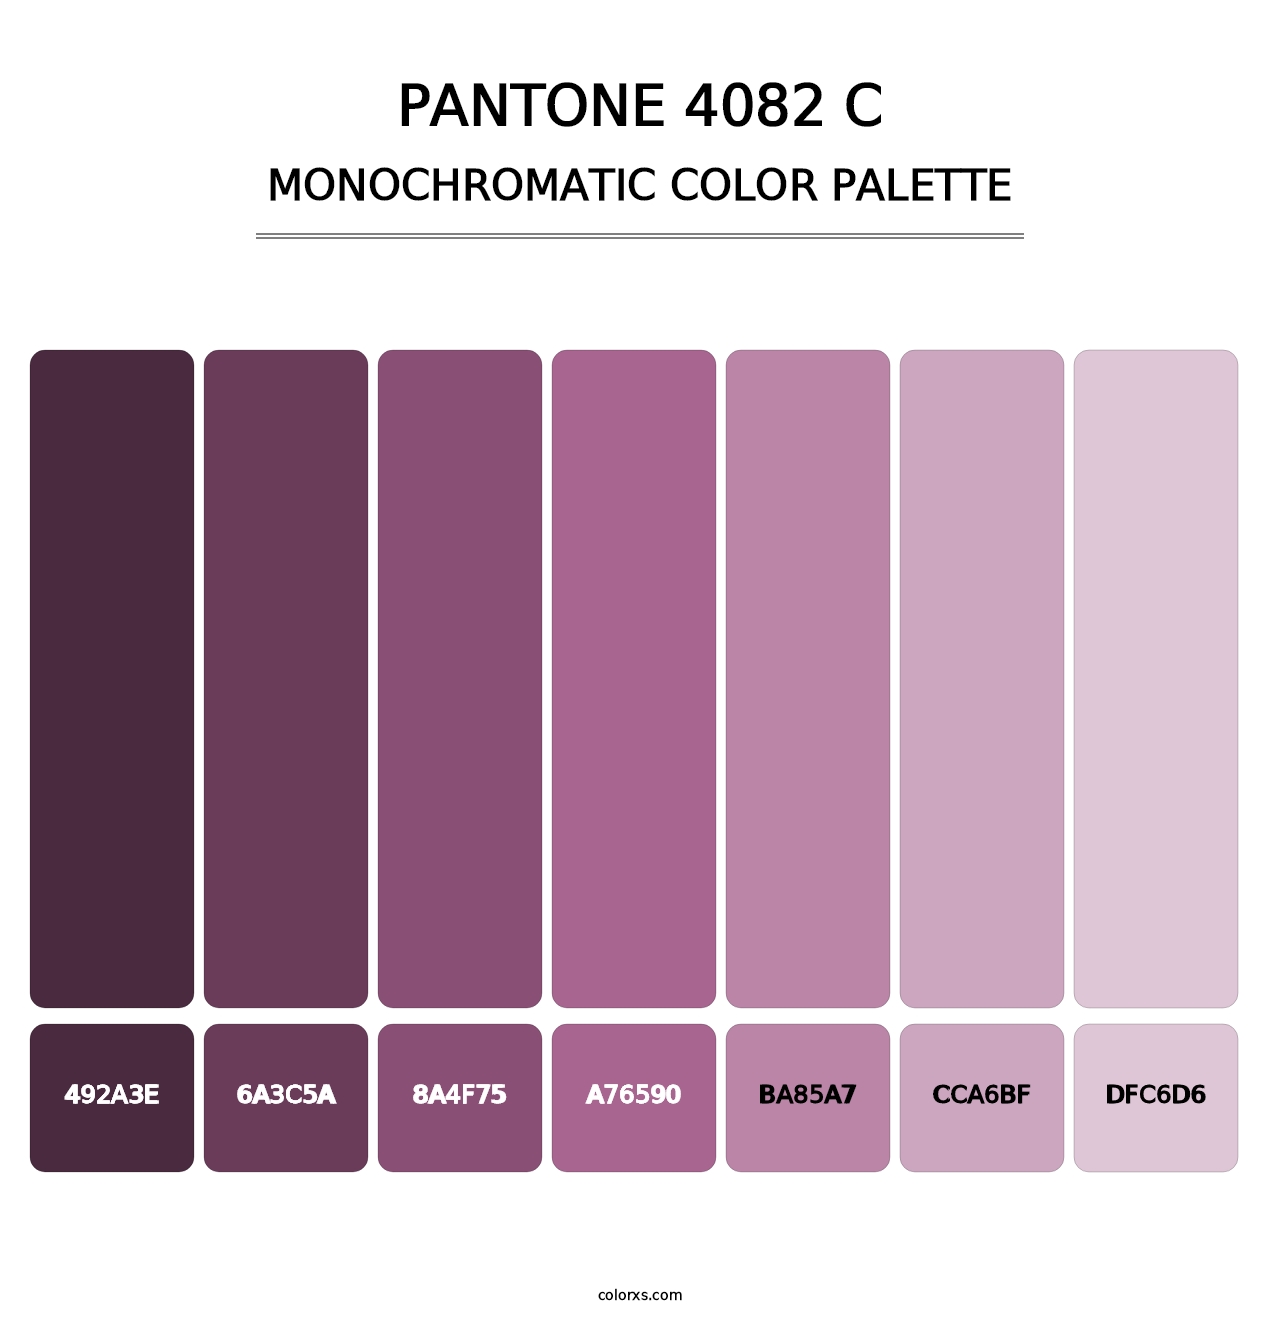 PANTONE 4082 C - Monochromatic Color Palette